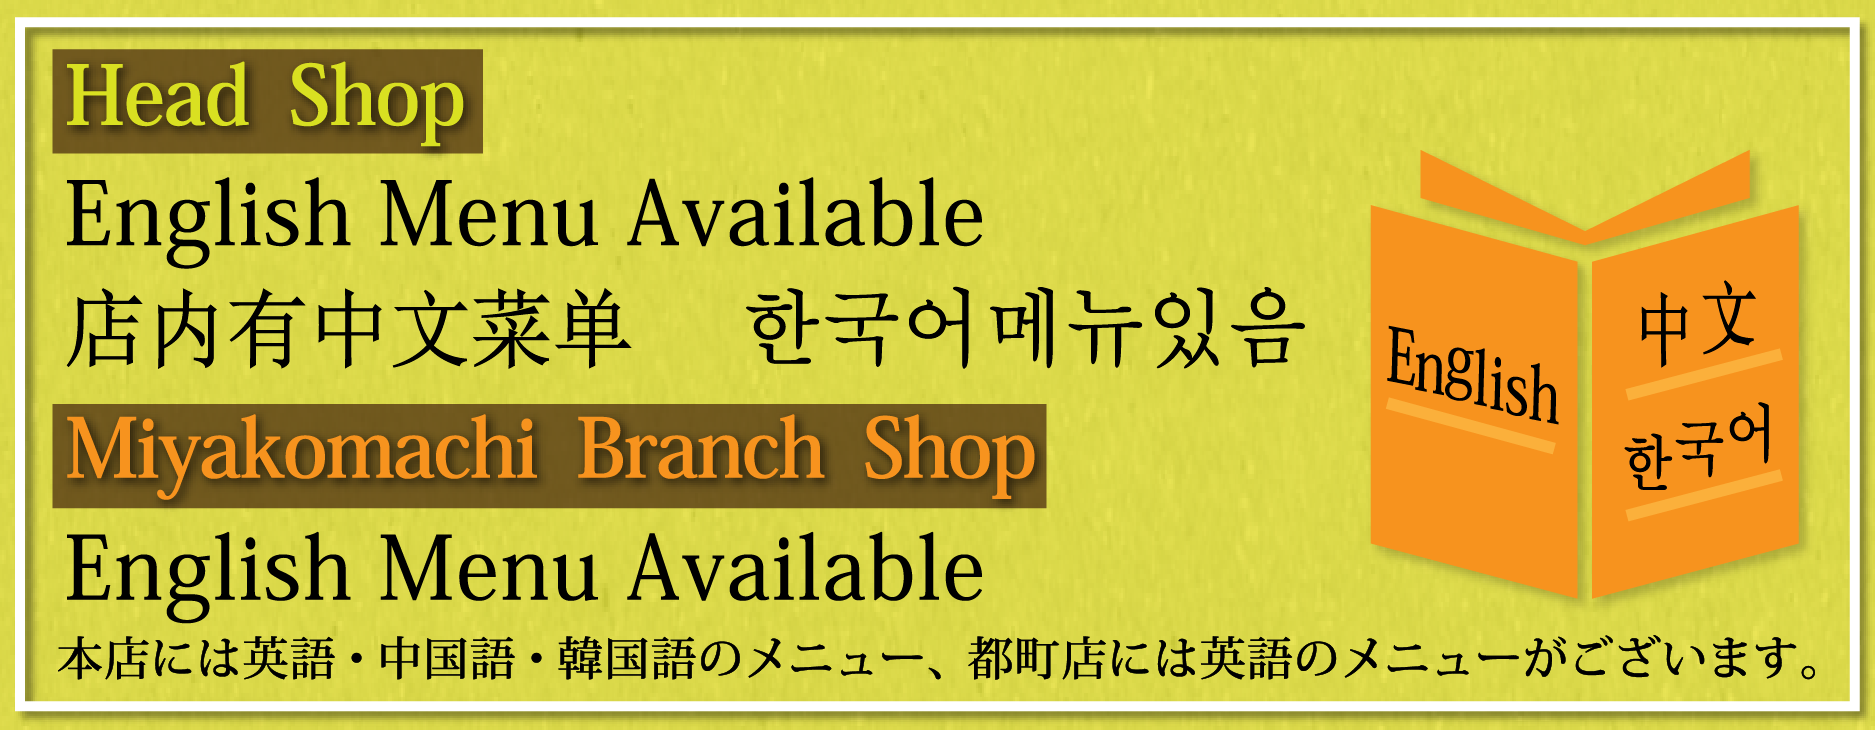 本店には英語・中国語・韓国語のメニュー、都町店には英語のメニューがございます。